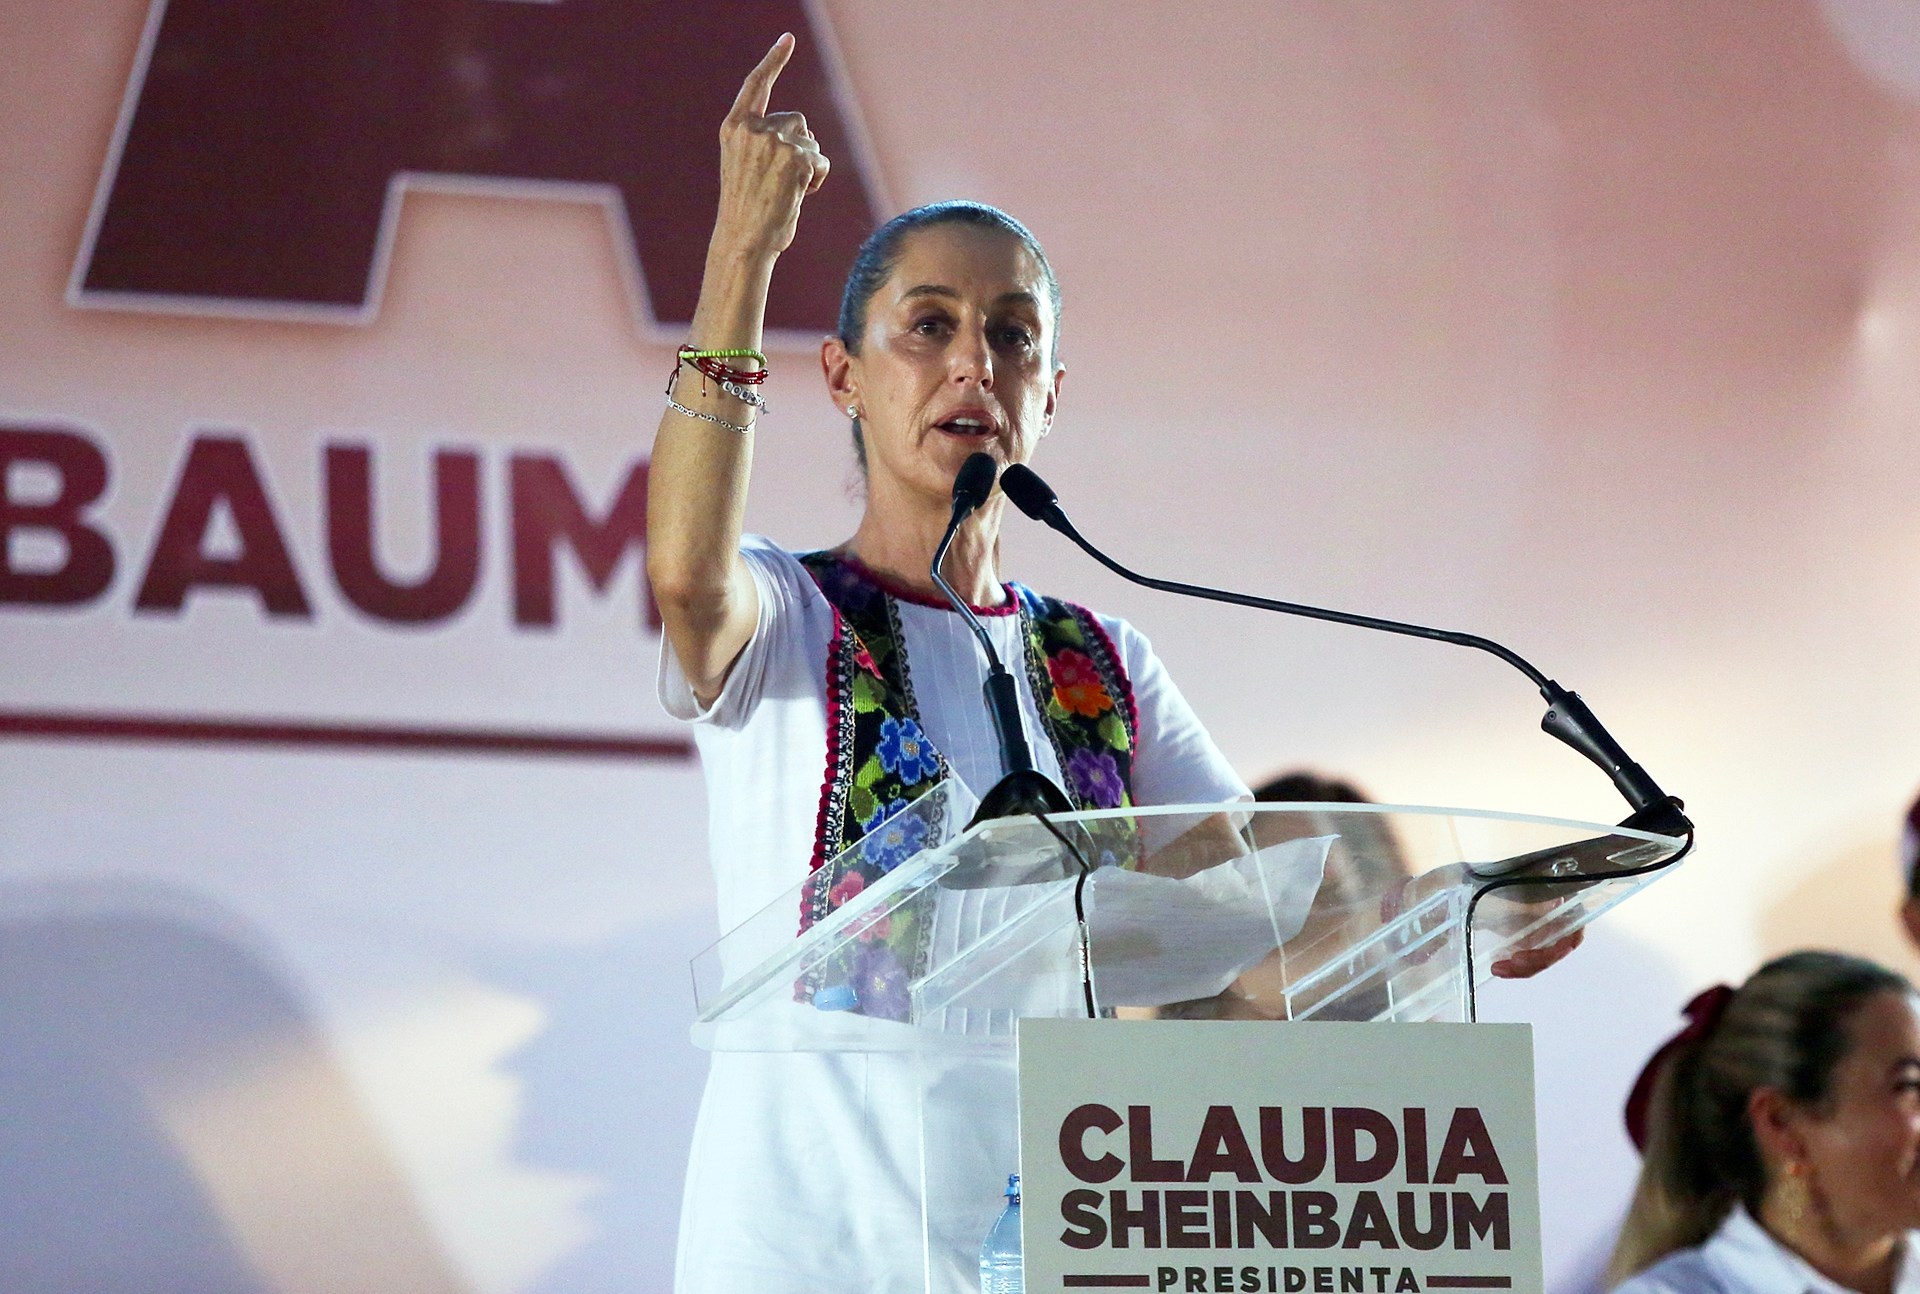 فوز كبير لكلاوديا شينباوم لتصبح أول رئيسة للمكسيك | أخبار – البوكس نيوز